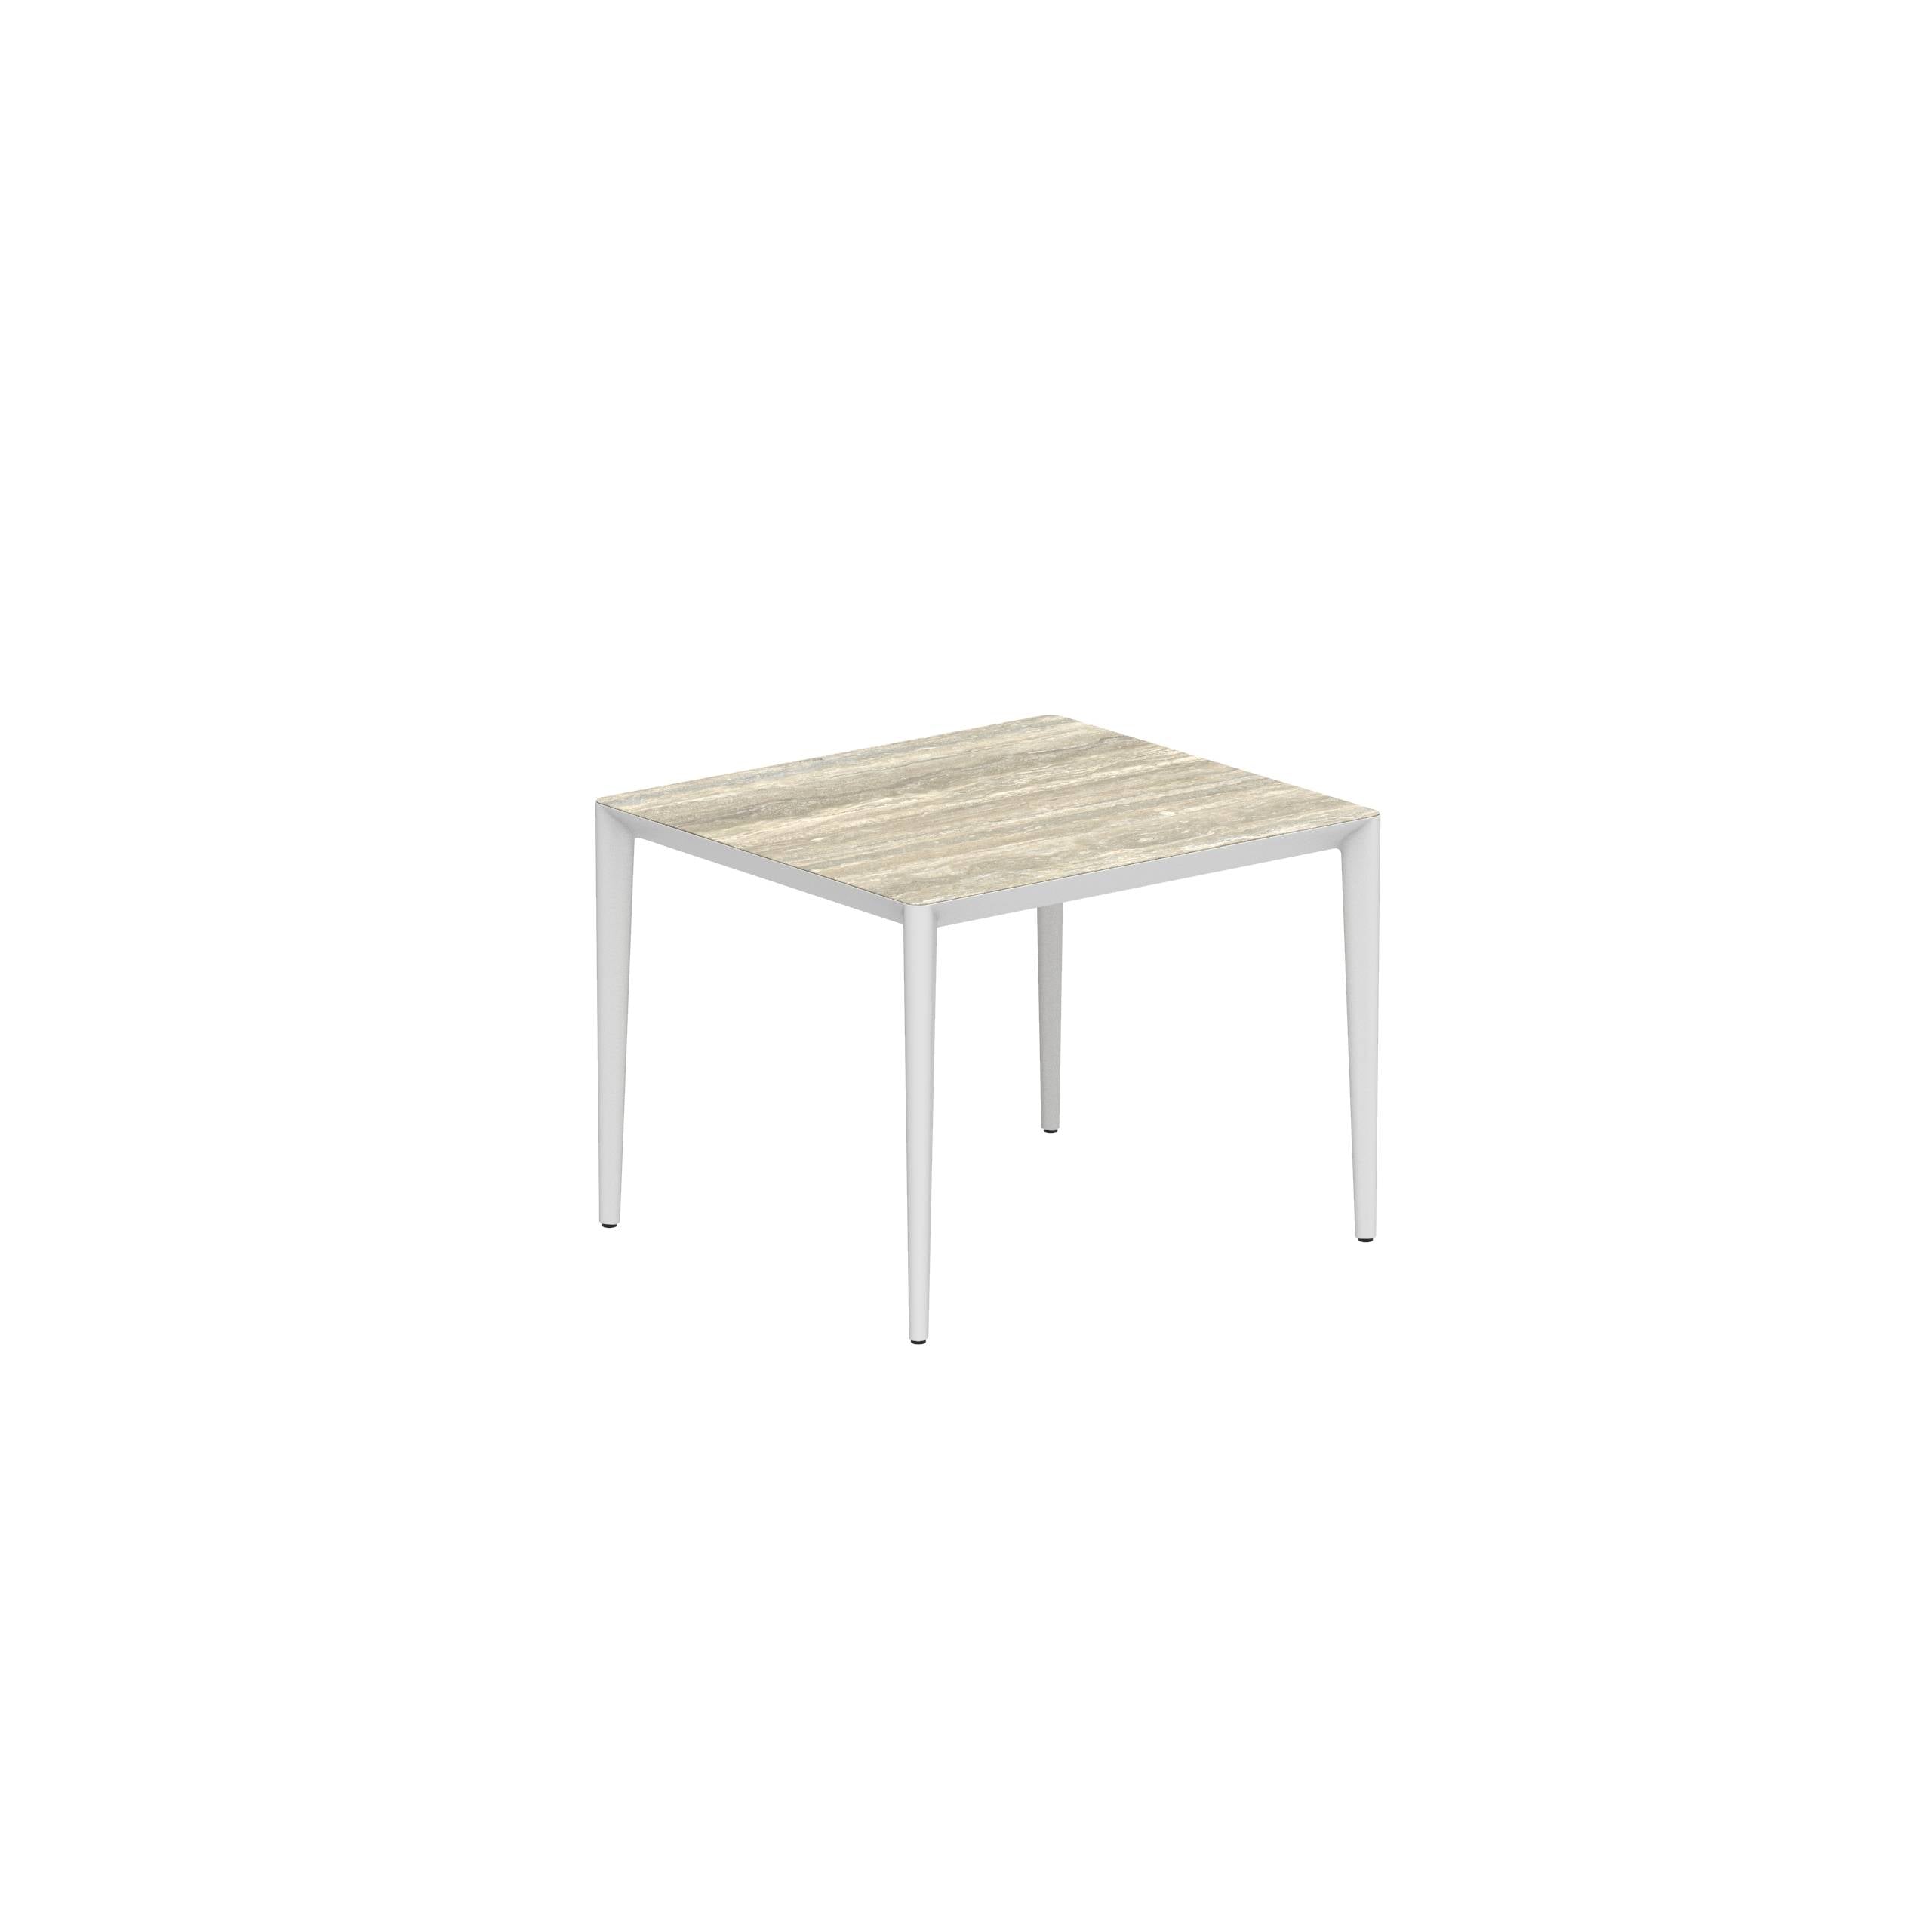 U-Nite Table 100x90cm White With Ceramic Tabletop In Travertine